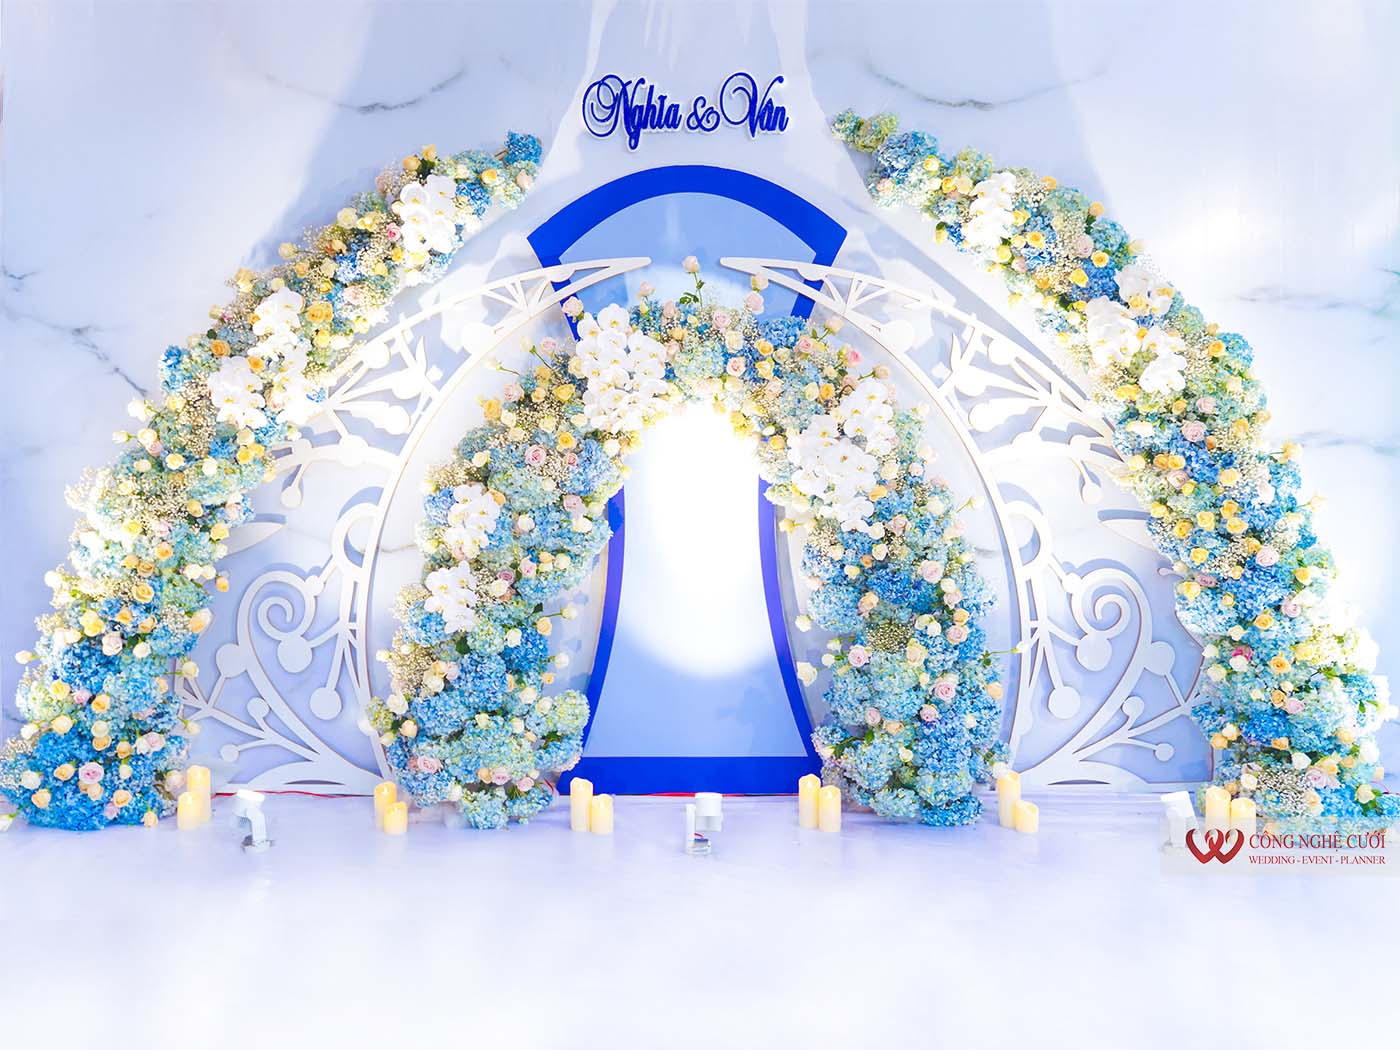 Đám cưới tông xanh navy với sự kết hợp tinh tế của những gam màu xanh lợt và trắng tinh khôi chắc chắn sẽ mang lại cho bạn một cảm giác đầy lãng mạn và sang trọng. Bức ảnh đẹp này sẽ khiến bạn mơ mộng và ước ao cho một đám cưới hoàn hảo.